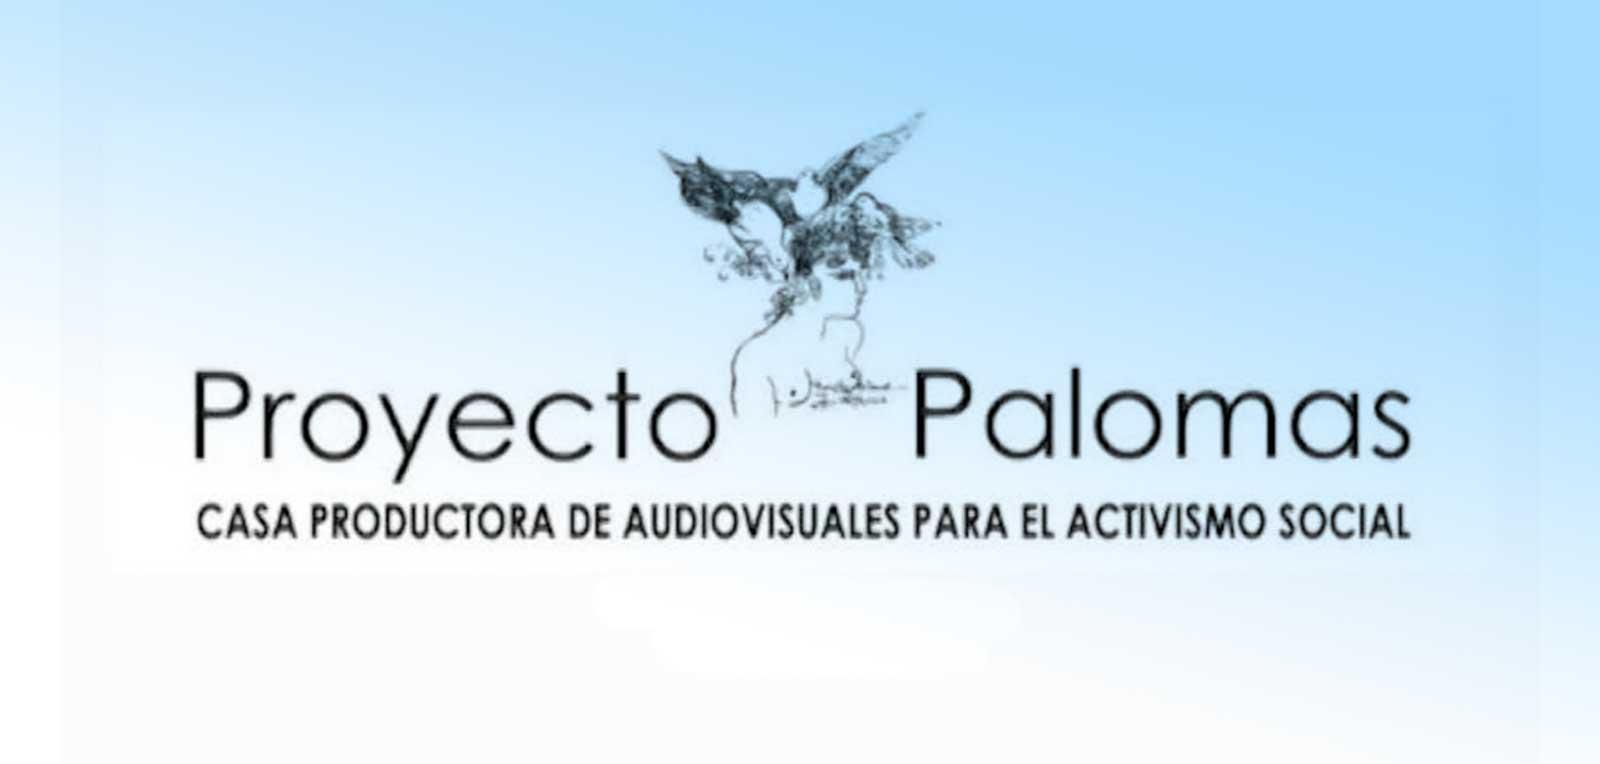 Proyecto Palomas, vitrina para activismo y audiovisual en Cuba